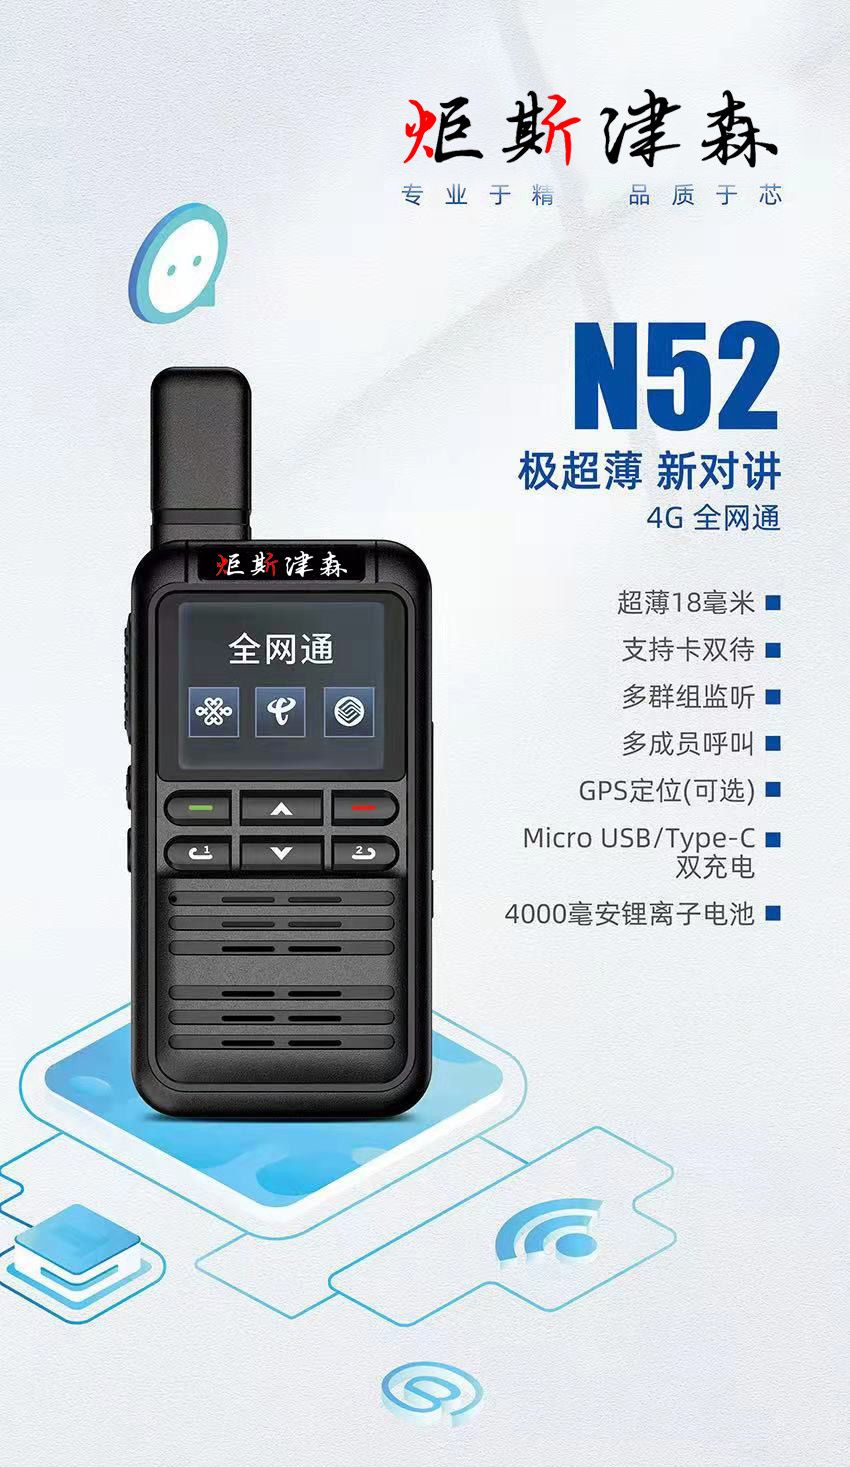 山西 | N52型薄款全网通插卡对讲机